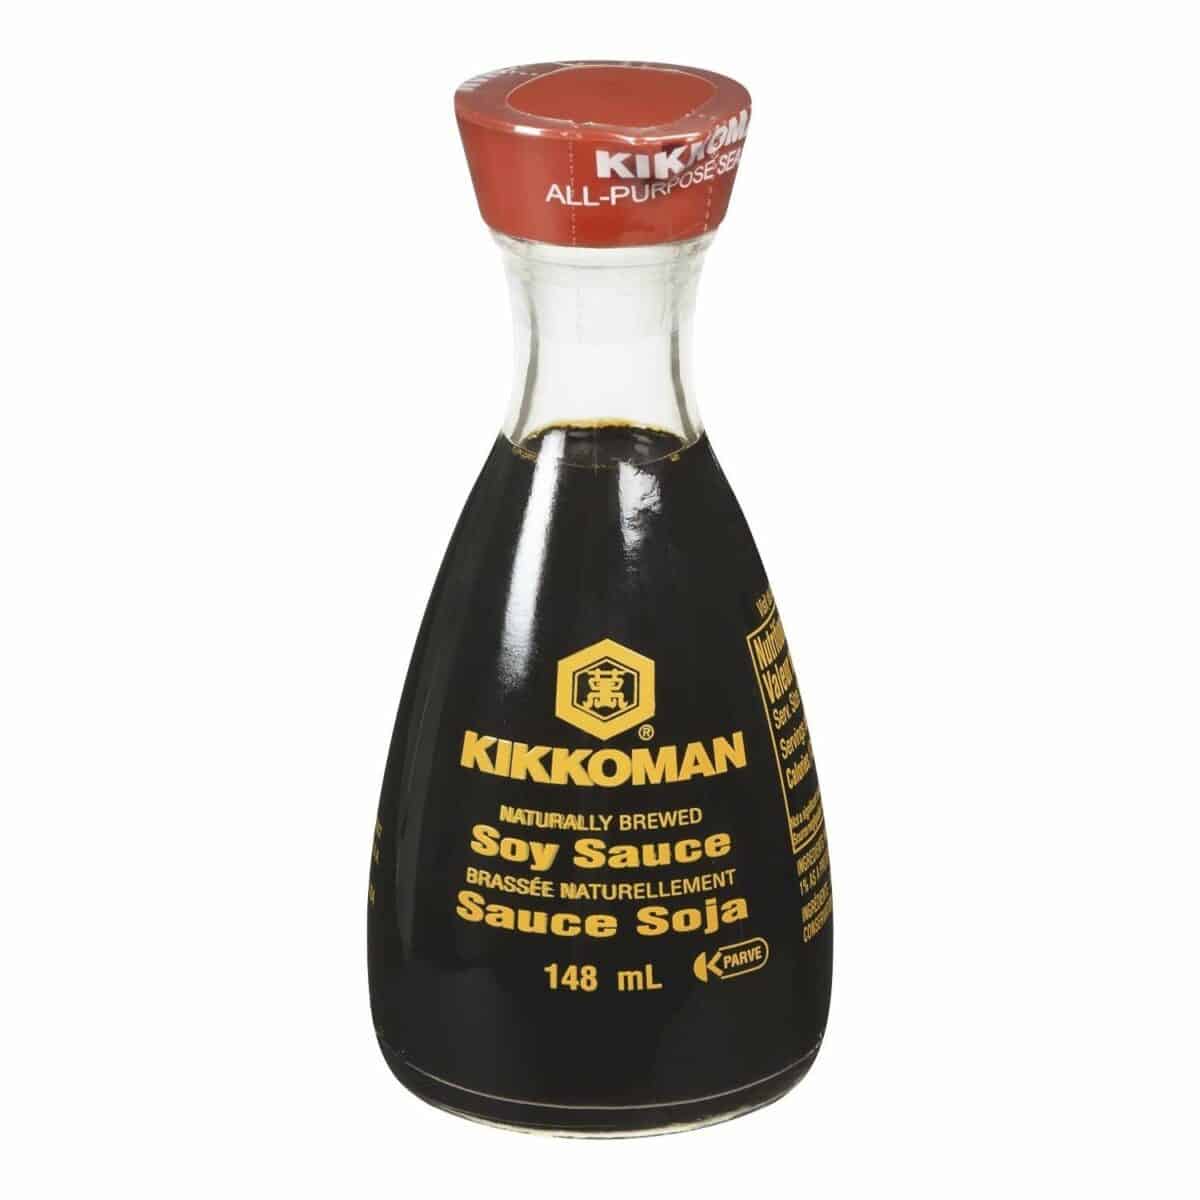 صلصة الصويا كيكومان الشهيرة في زجاجة زجاجية